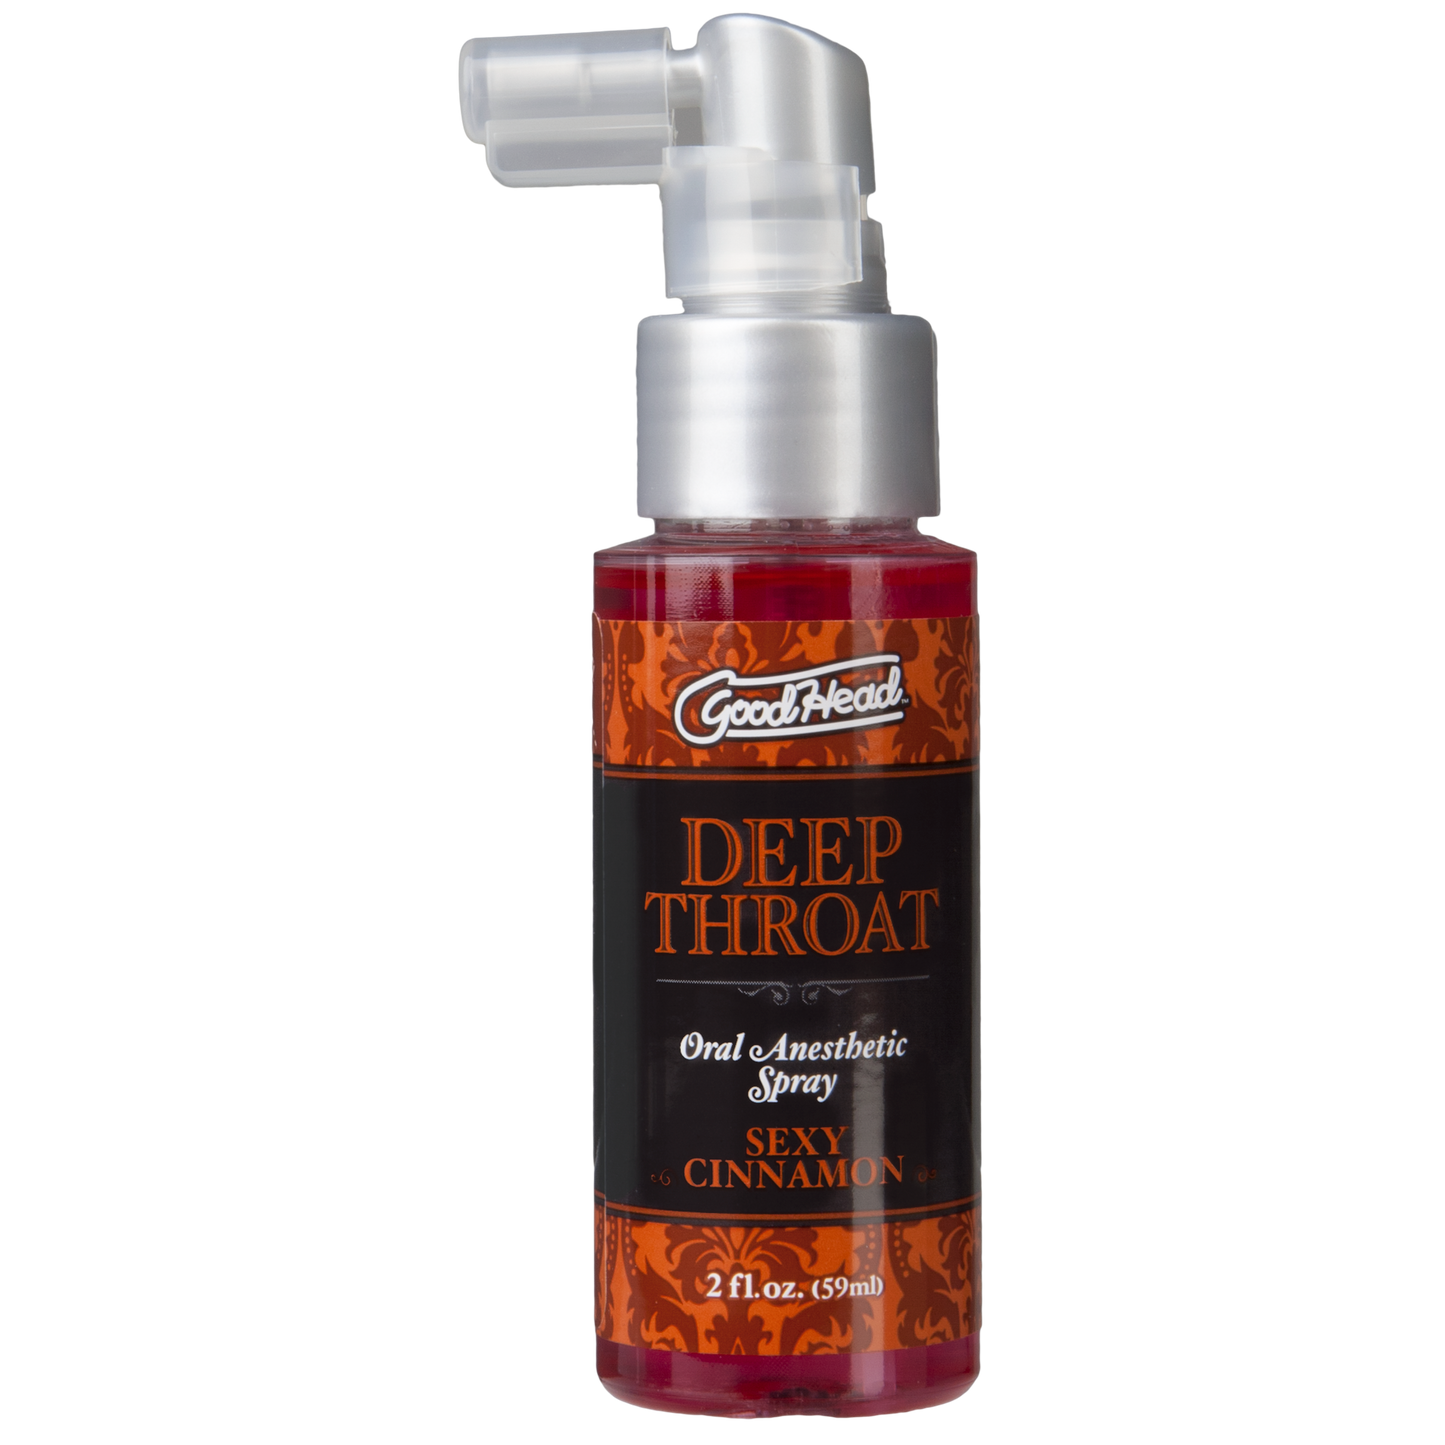 GoodHead To Go Deep Throat Spray - 2 fl.oz./59ml - Thorn & Feather